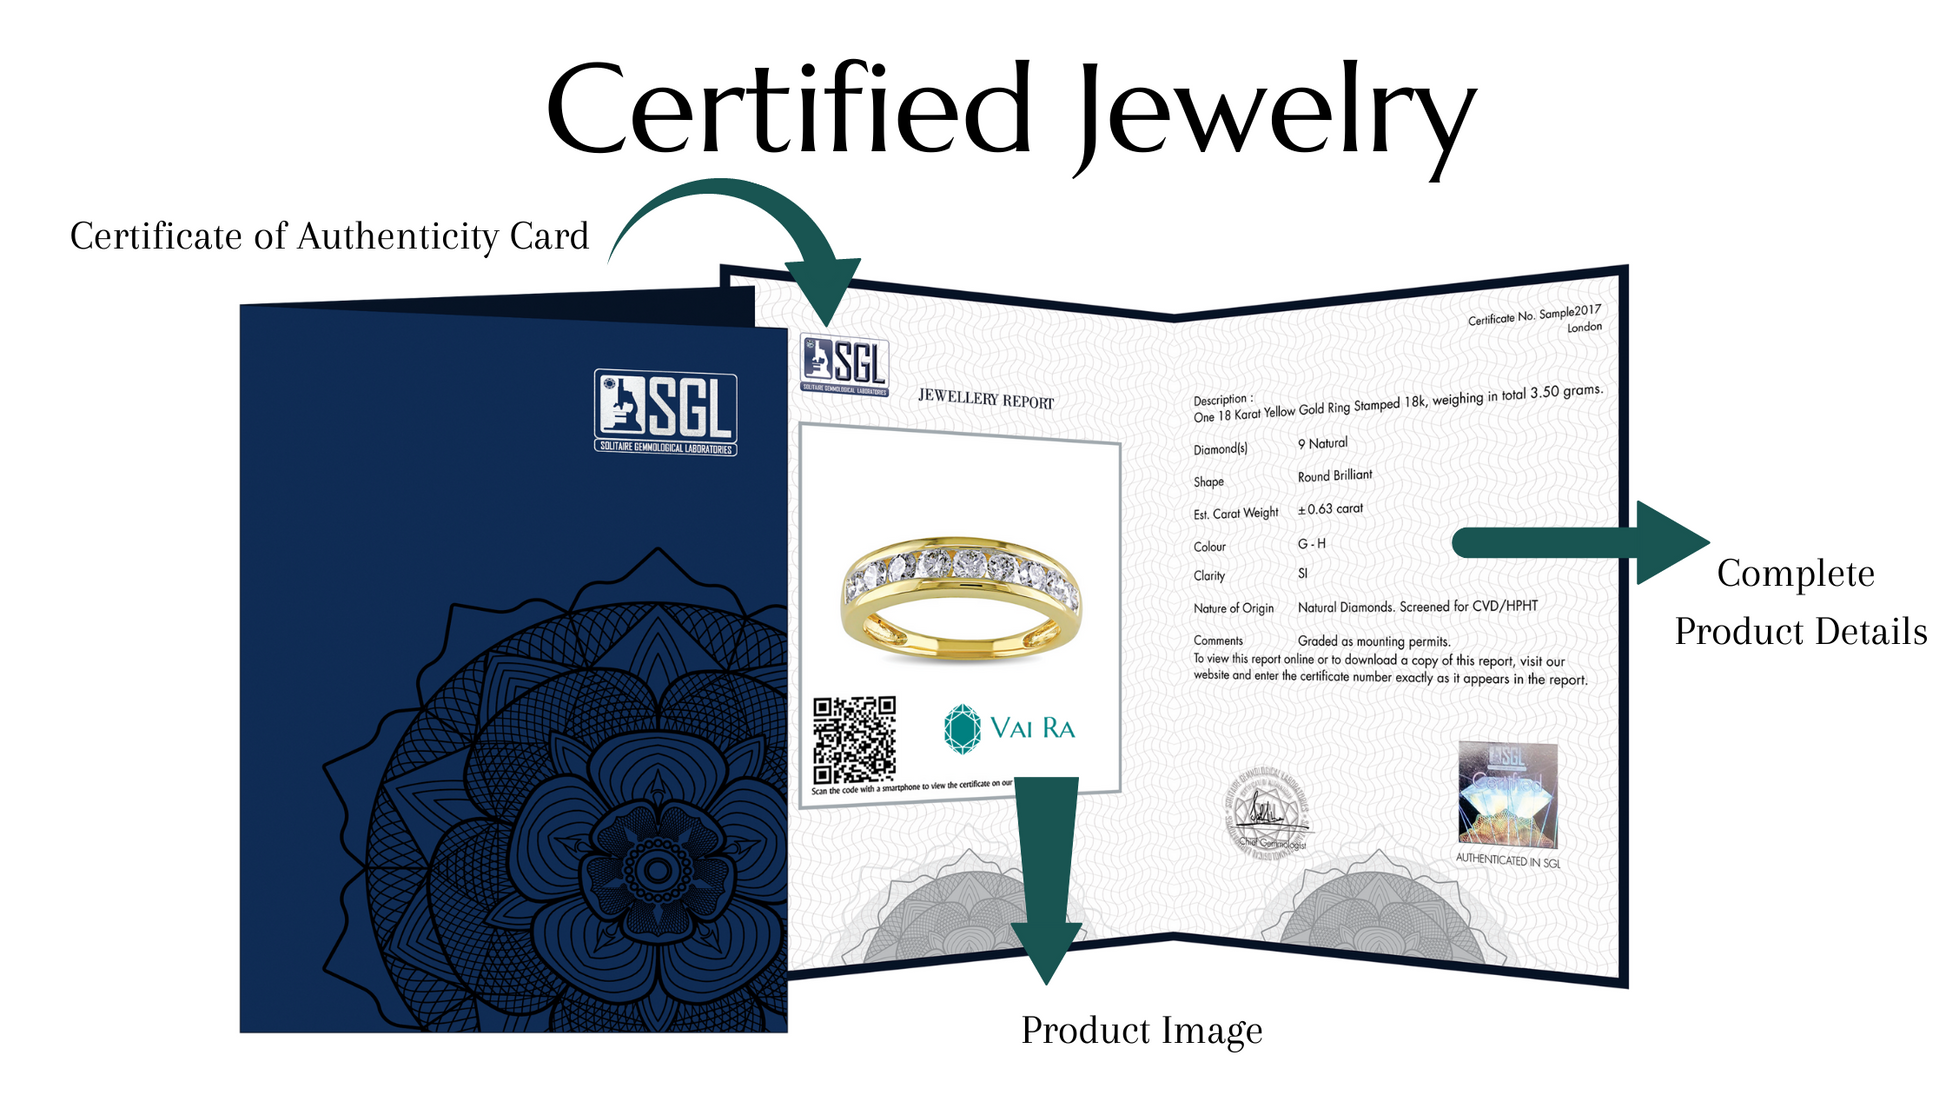 The Portia Ring - Moissanite Diamond